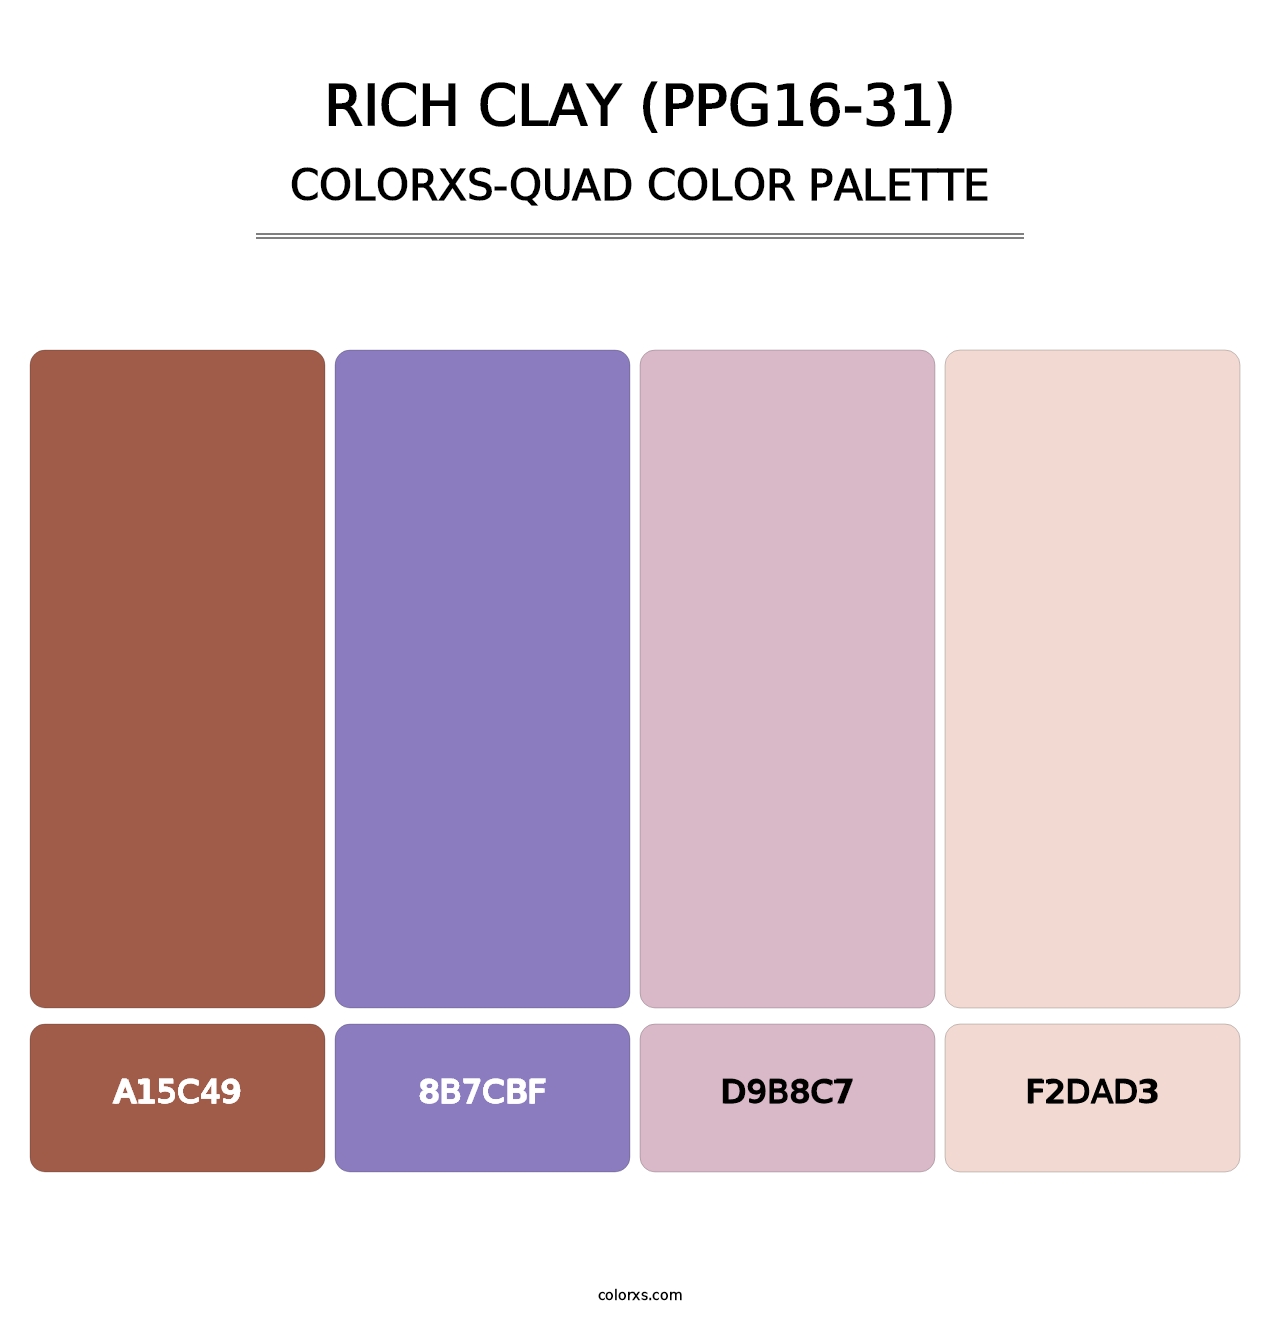 Rich Clay (PPG16-31) - Colorxs Quad Palette